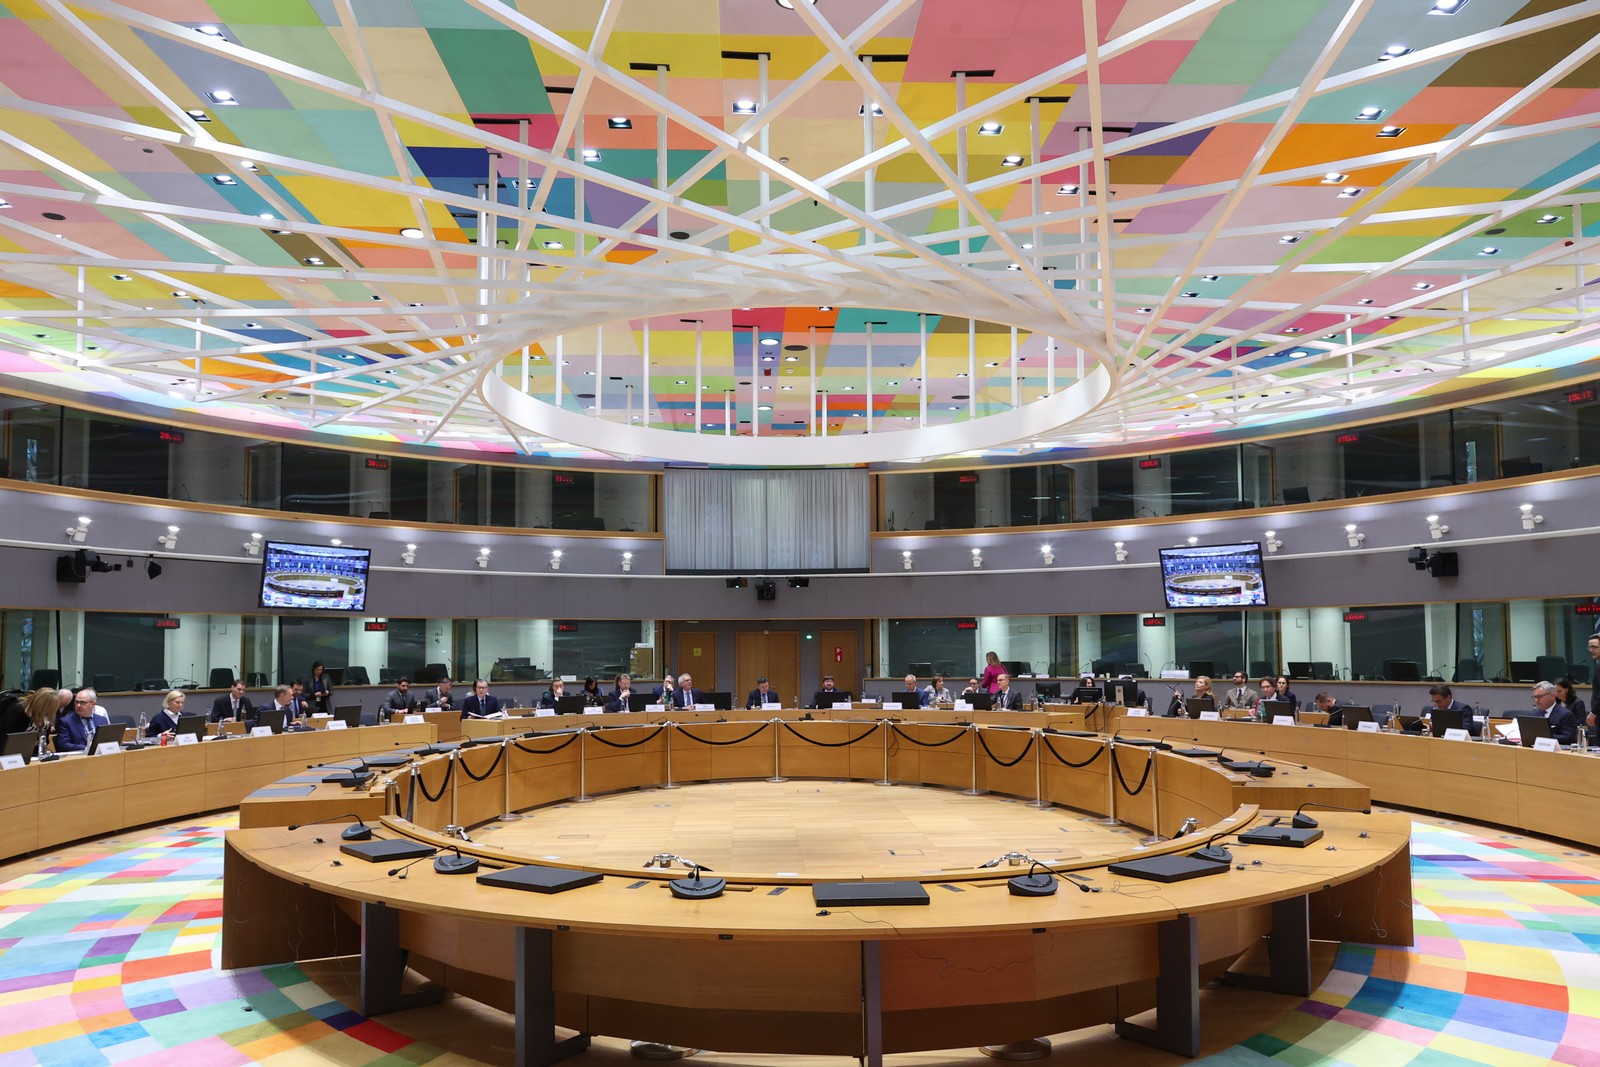 Στις 7 και 8 Δεκεμβρίου η Σύνοδος του Eurogroup στις Βρυξέλλες – Η ατζέντα